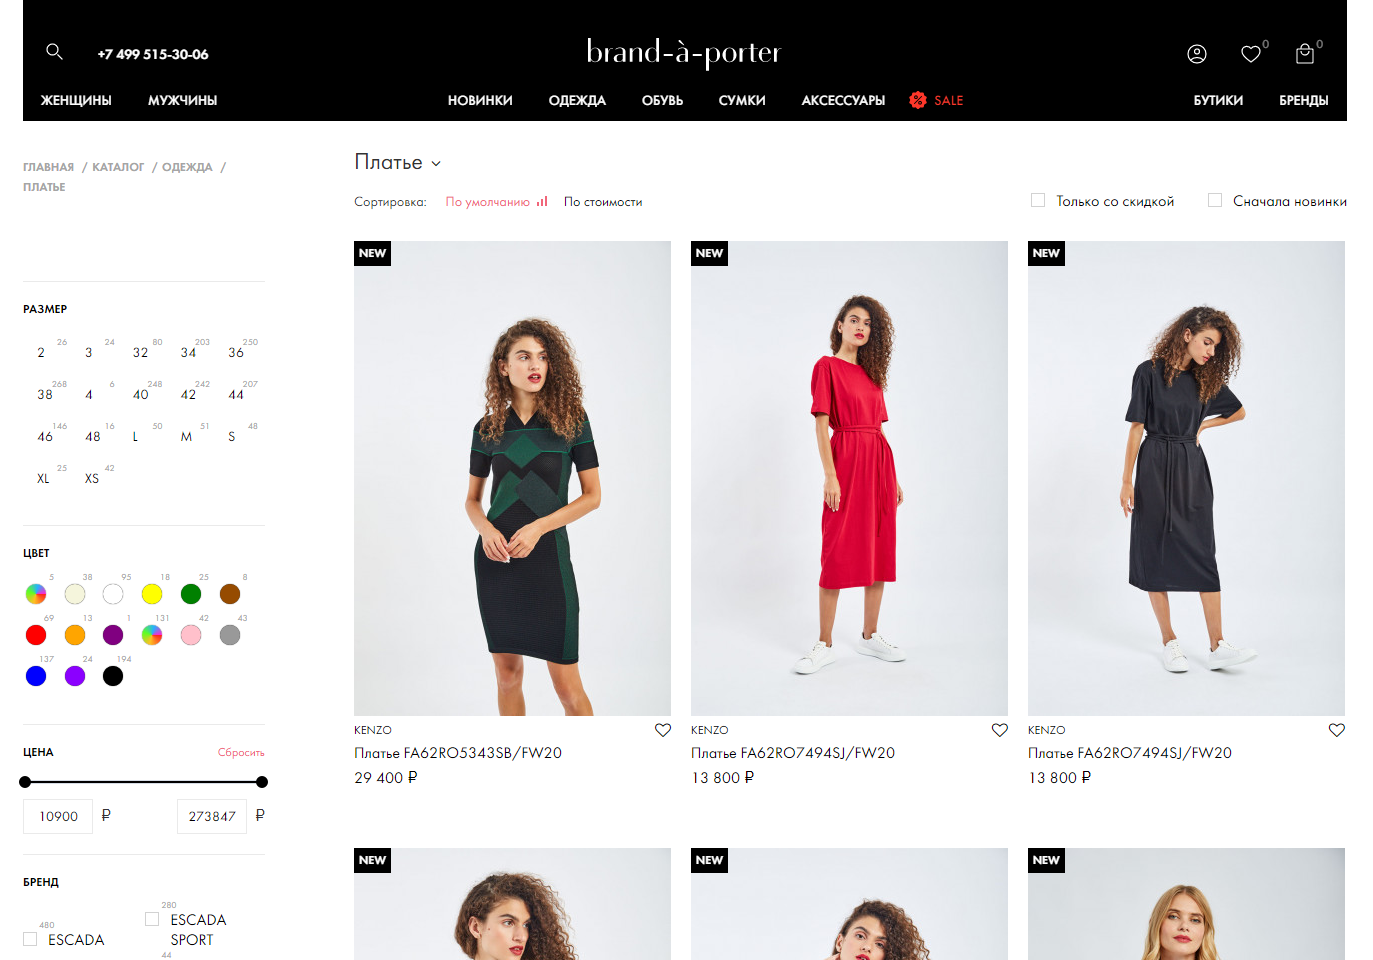 brand-a-porter - интернет-магазин брендовой одежды